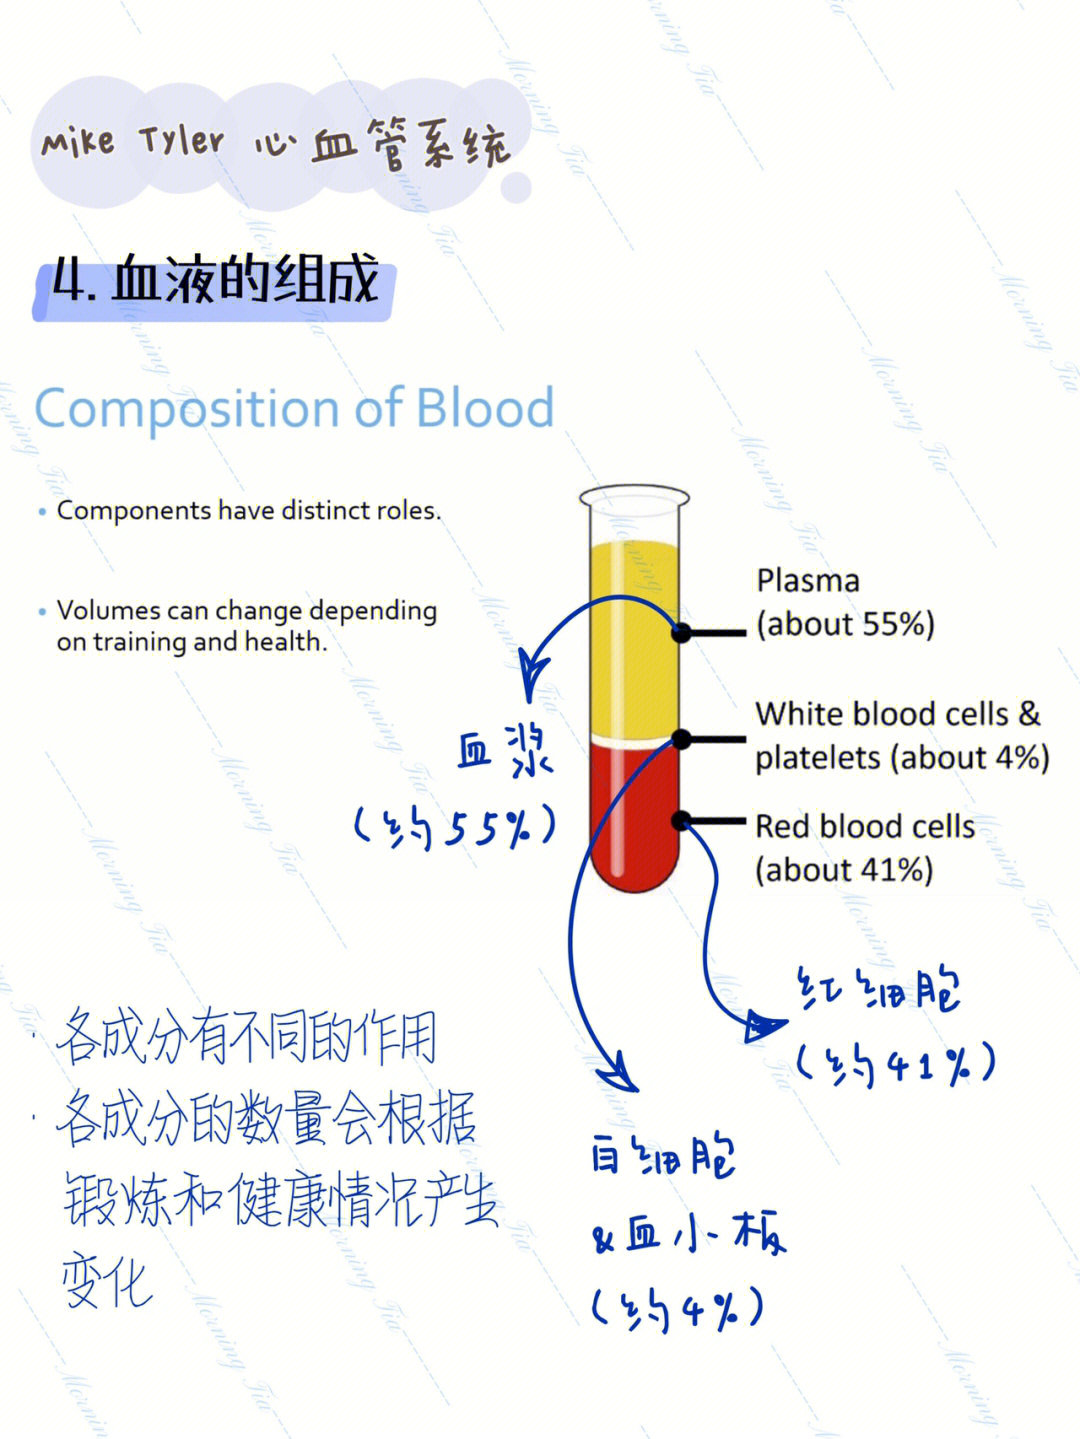 血液组成成分及比例图图片